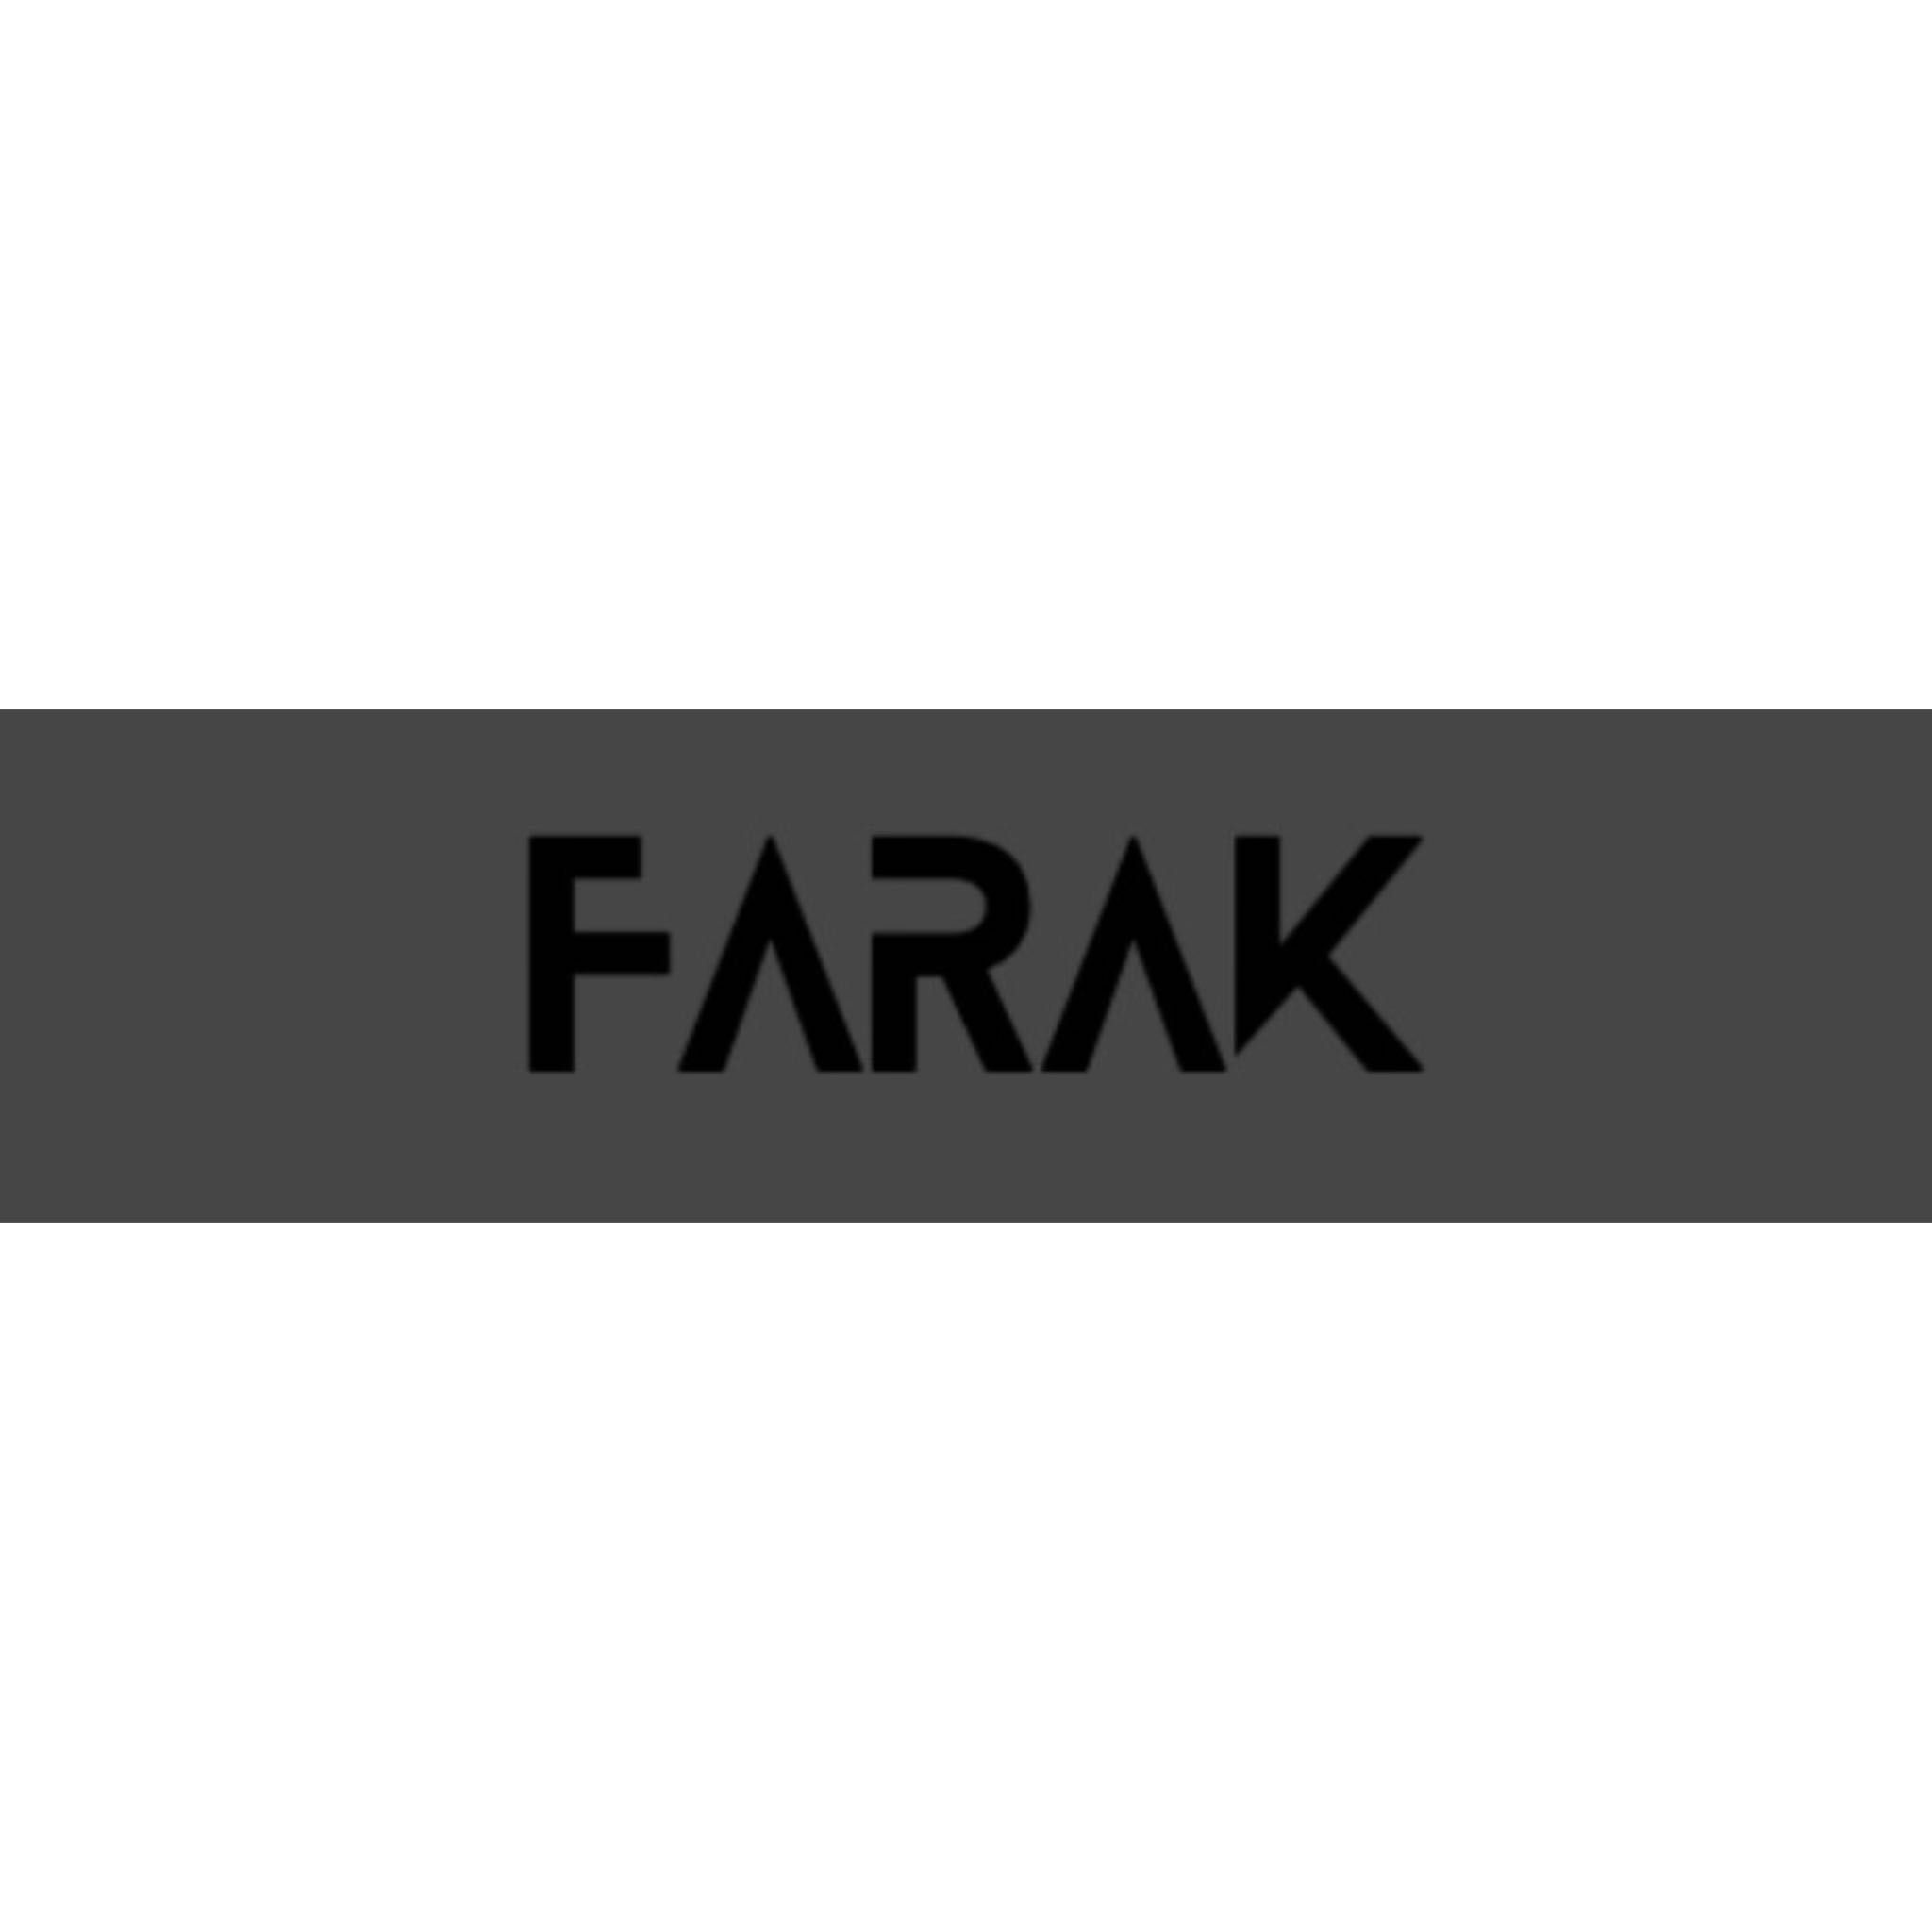 Farak Nails, 12121 sw 31 st terrace, Miami, FL, 33175